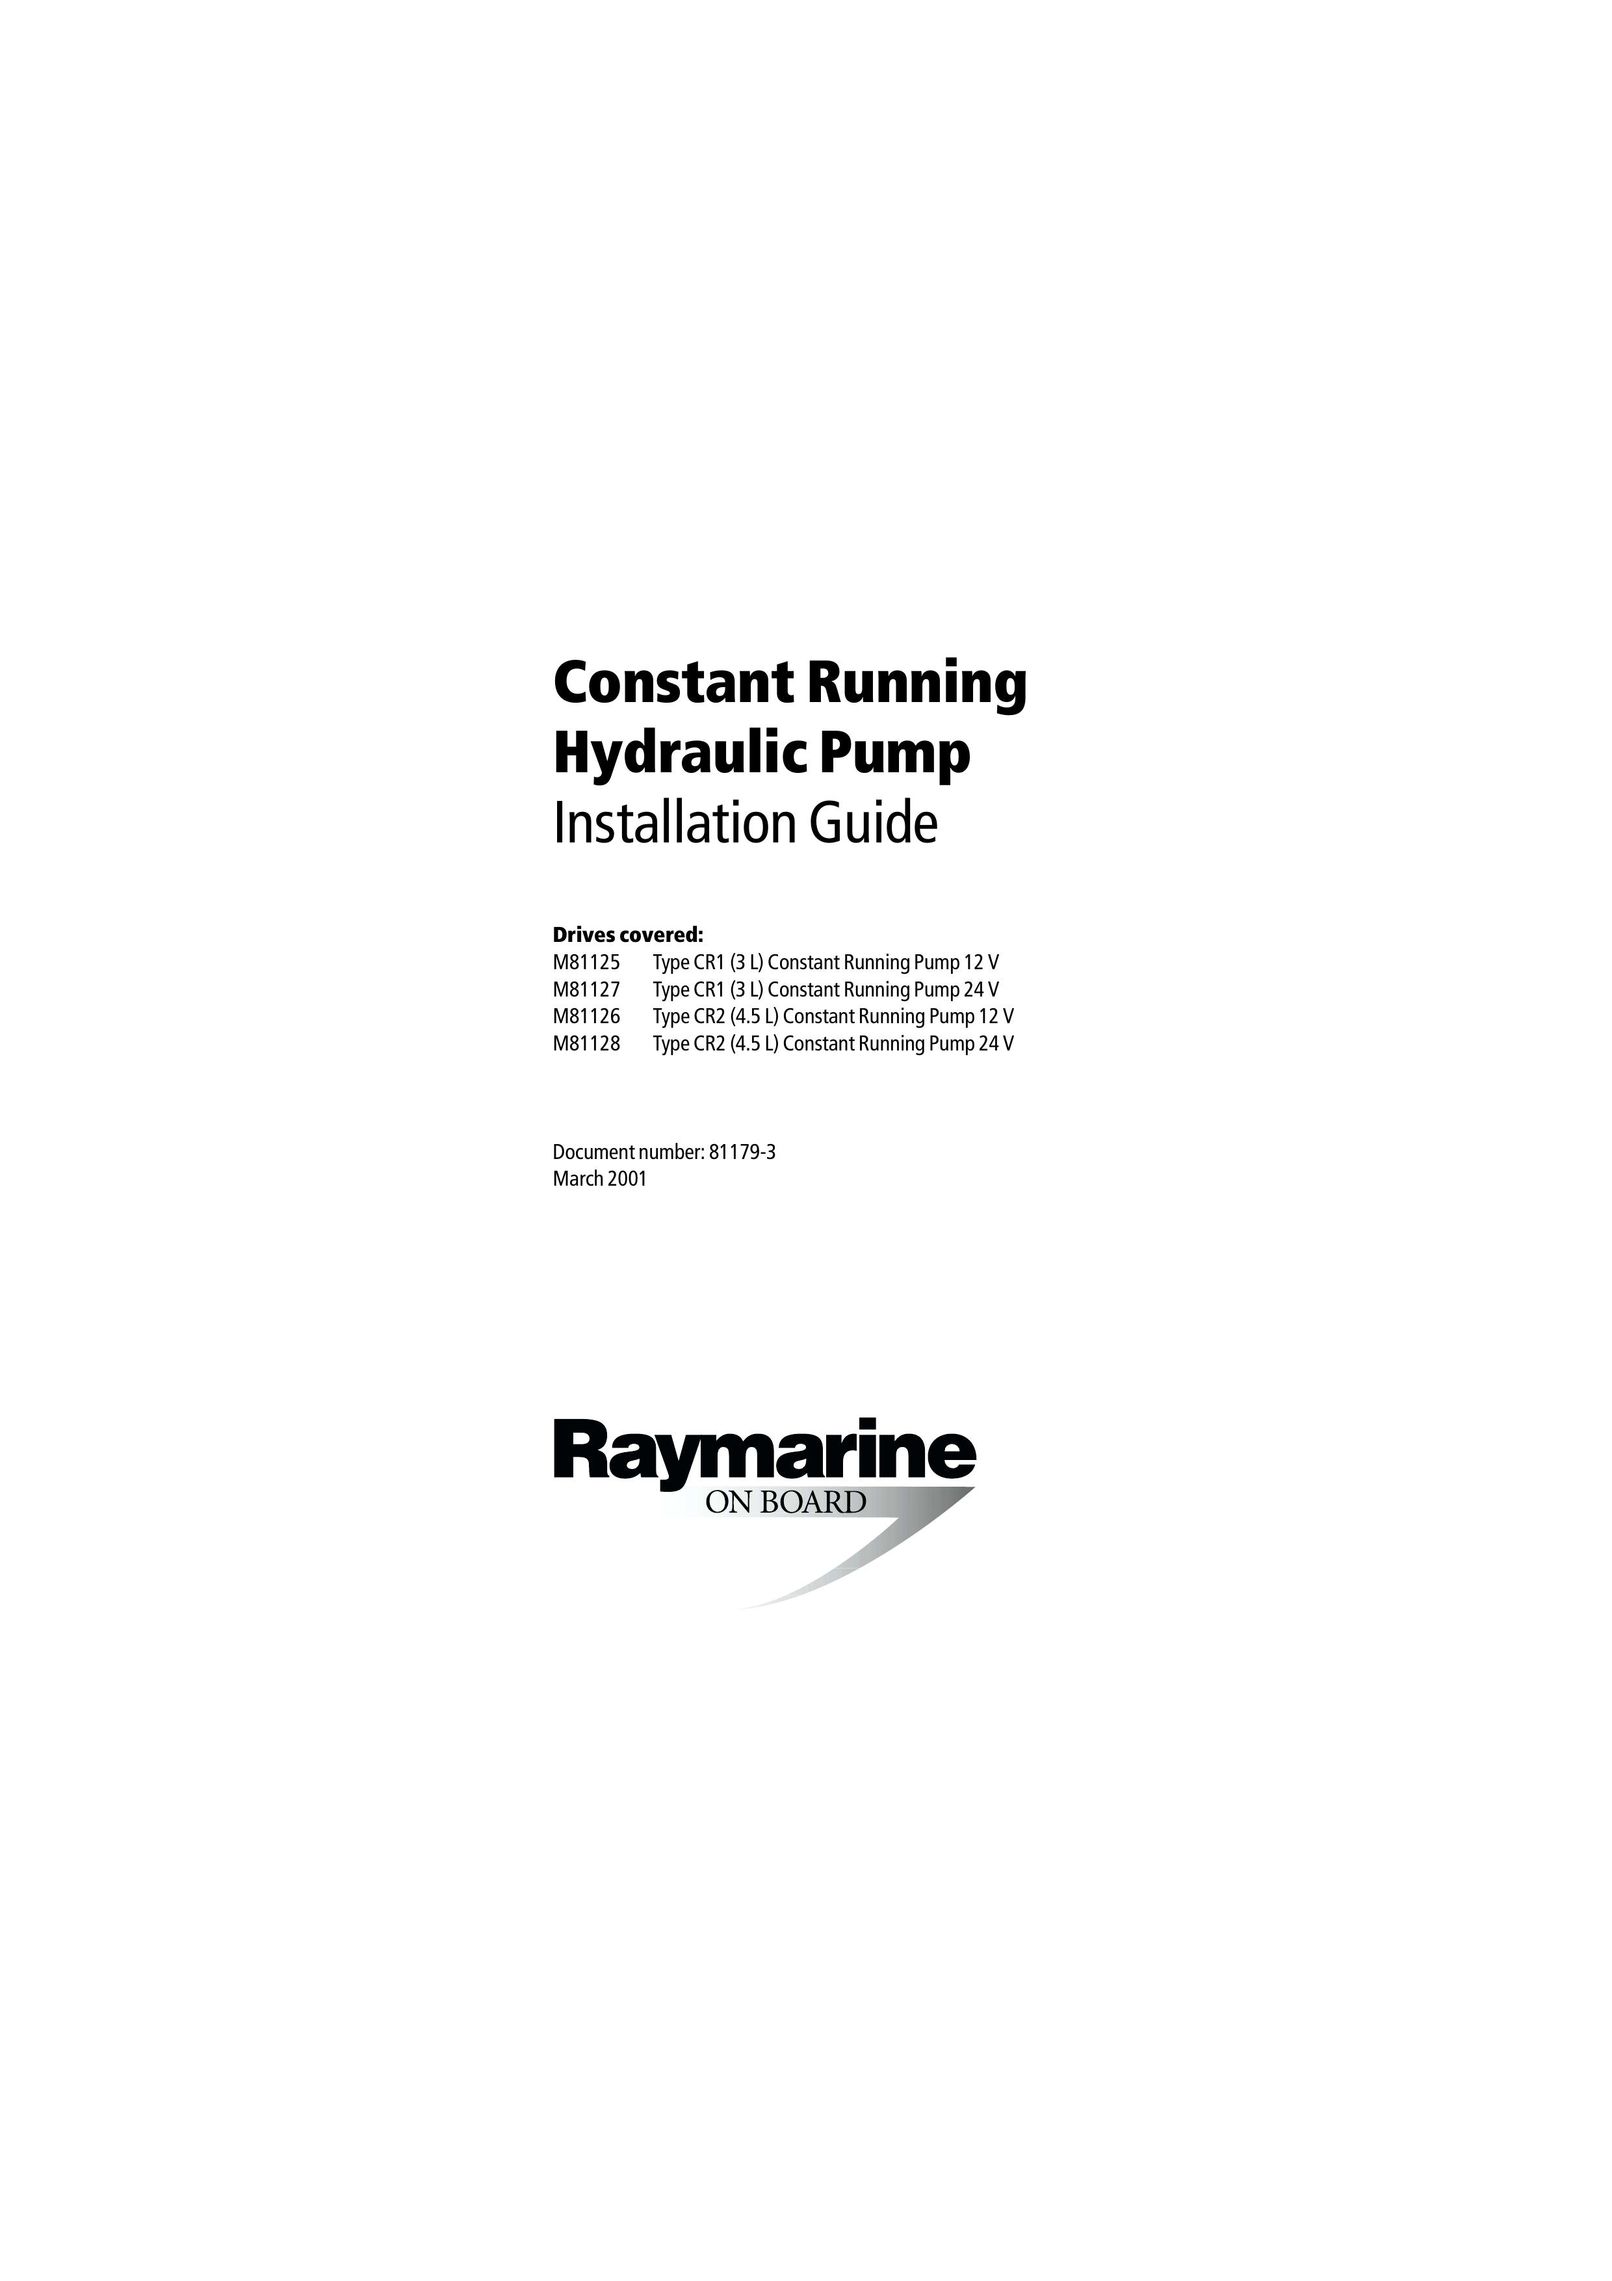 Raymarine M81166 Water Pump User Manual